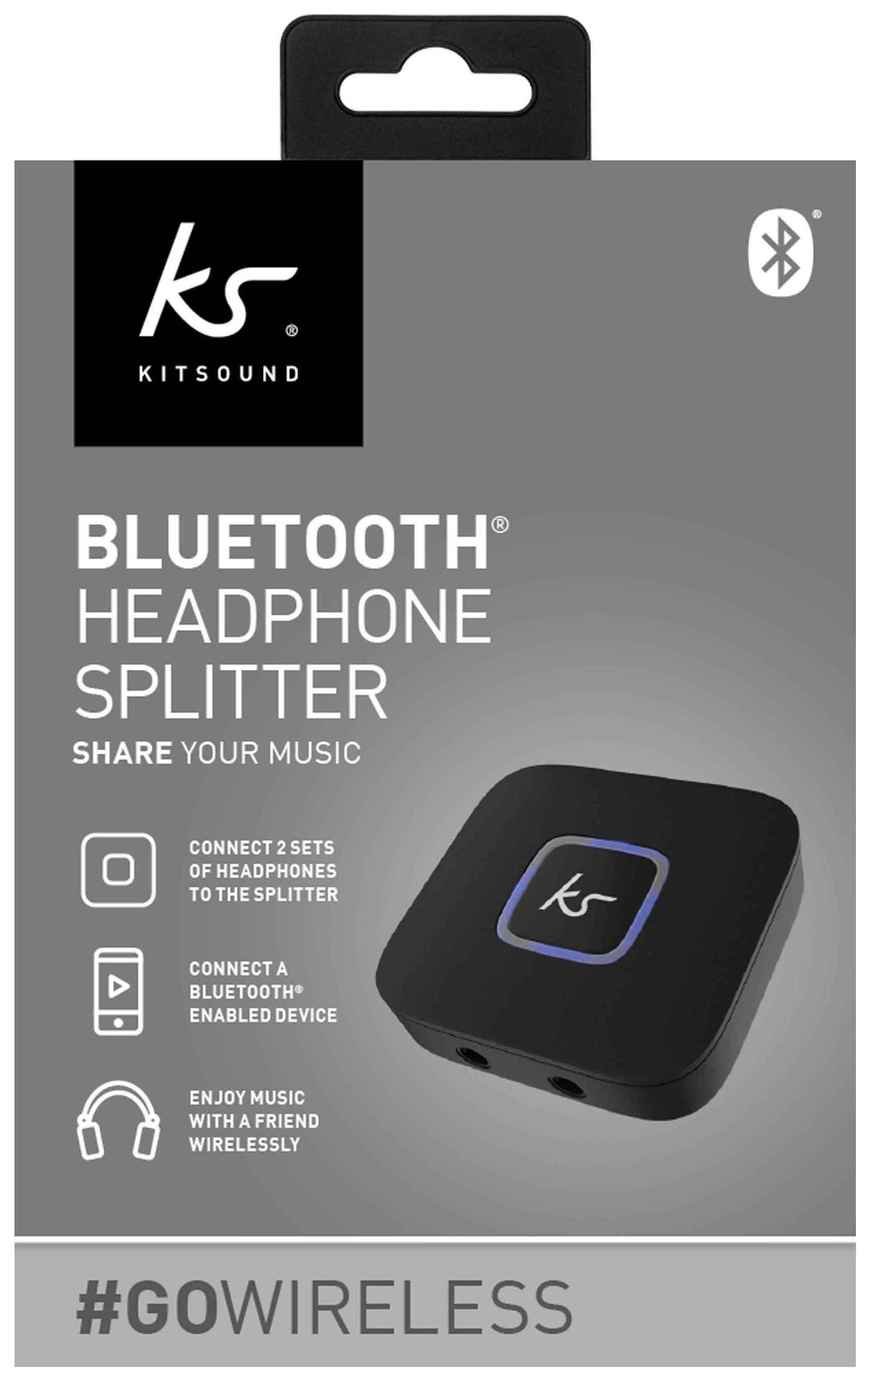 KitSound Bluetooth Headphone Splitter review